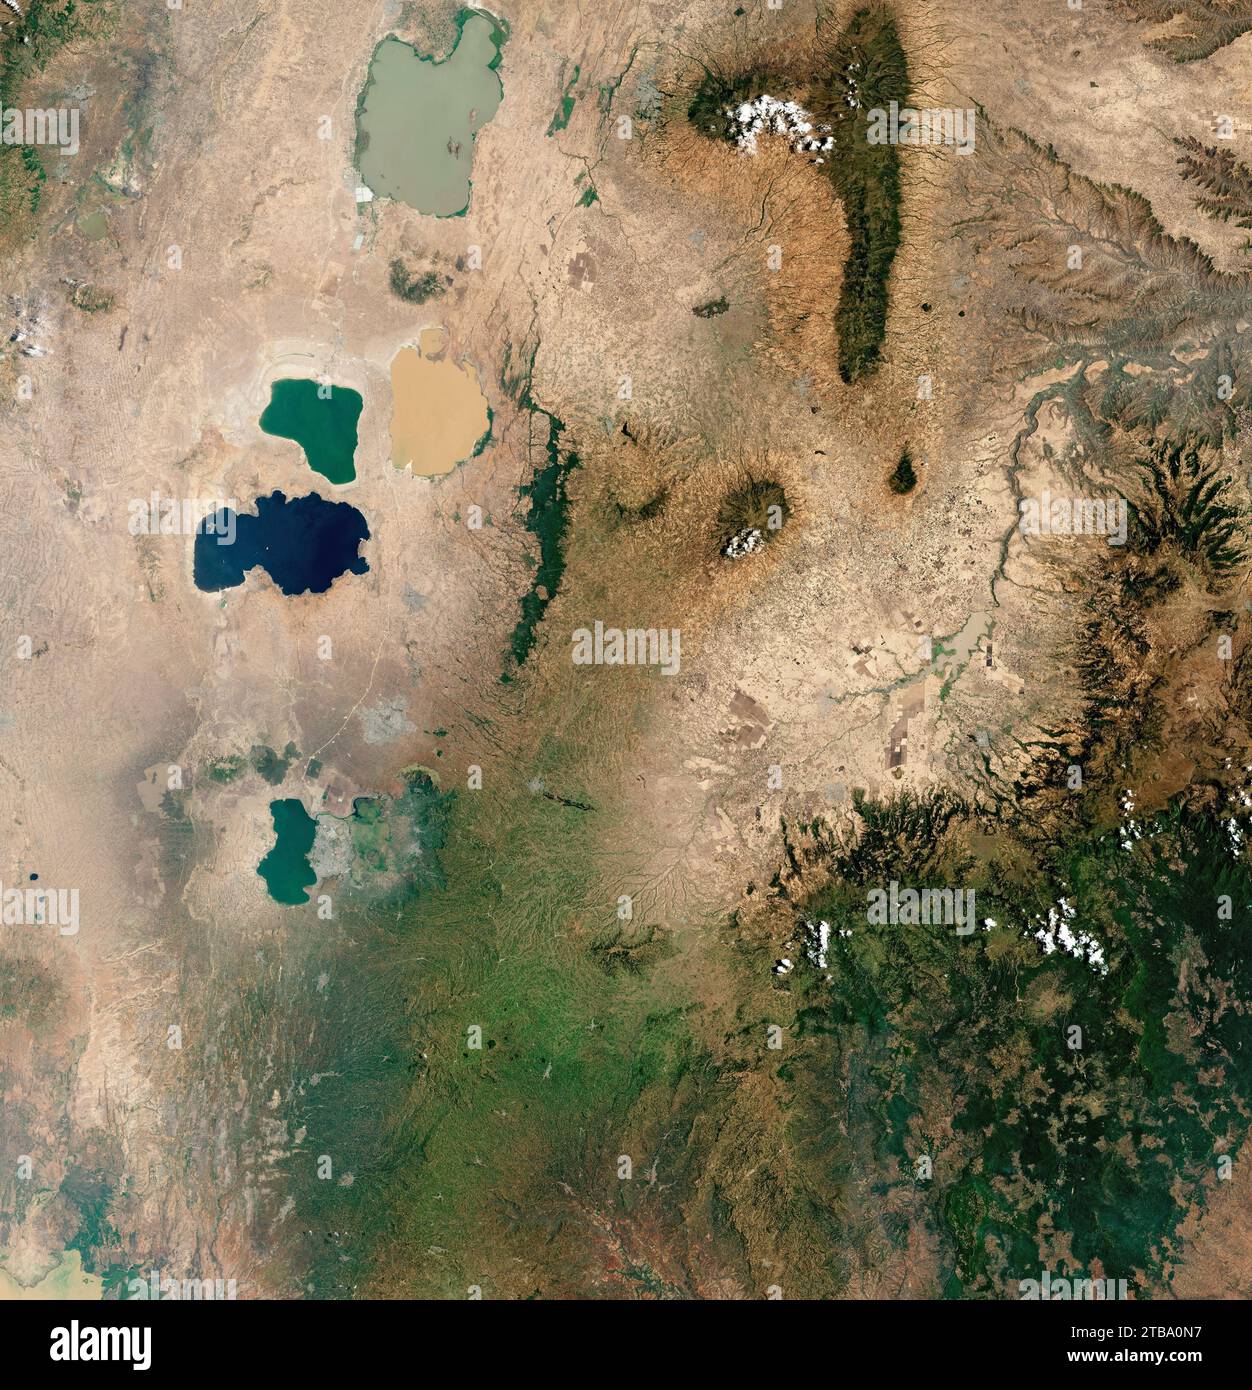 Natural-color satellite view of Lake Shala, Lake Abijata and Lake Langano. Stock Photo